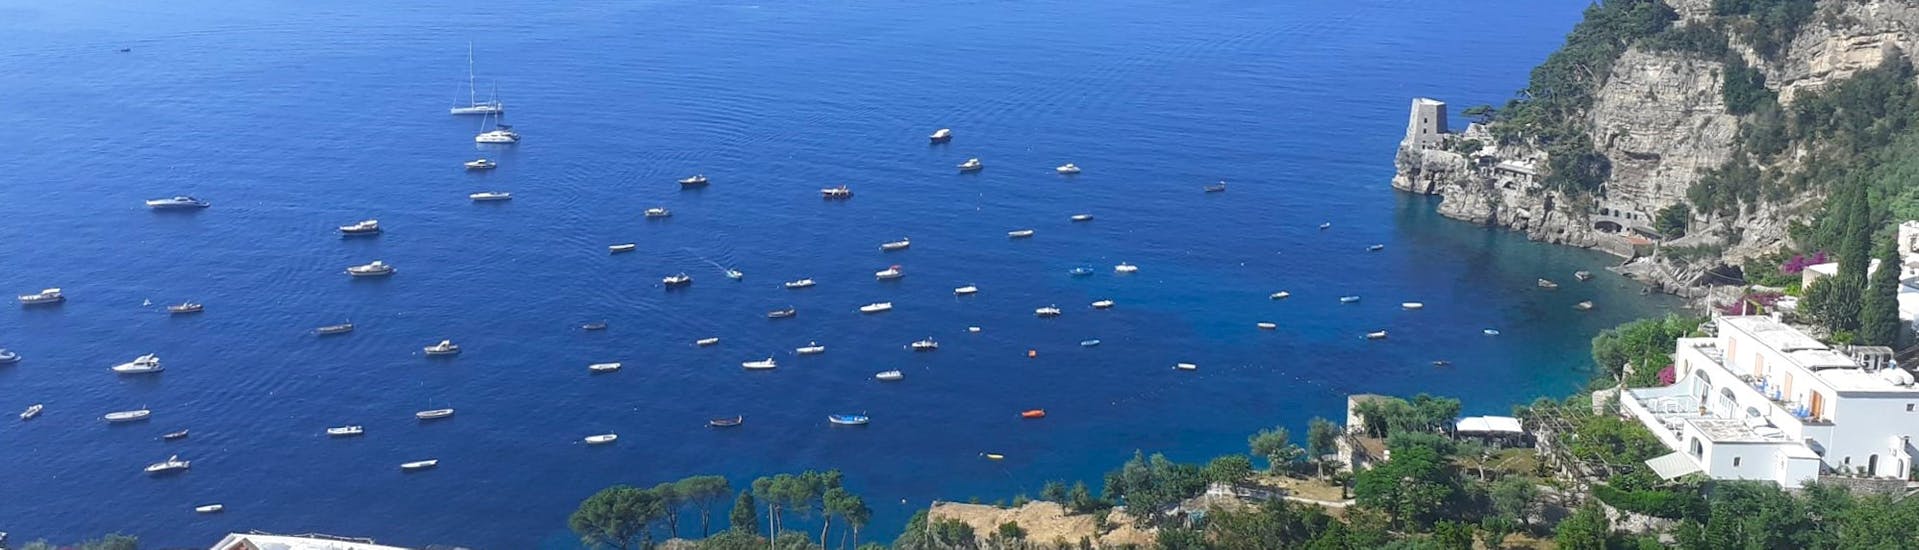 Vista dall'alto sulla Costiera Amalfitana con il Noleggio barche da Positano per la Costiera Amalfitana (fino a 4 persone).